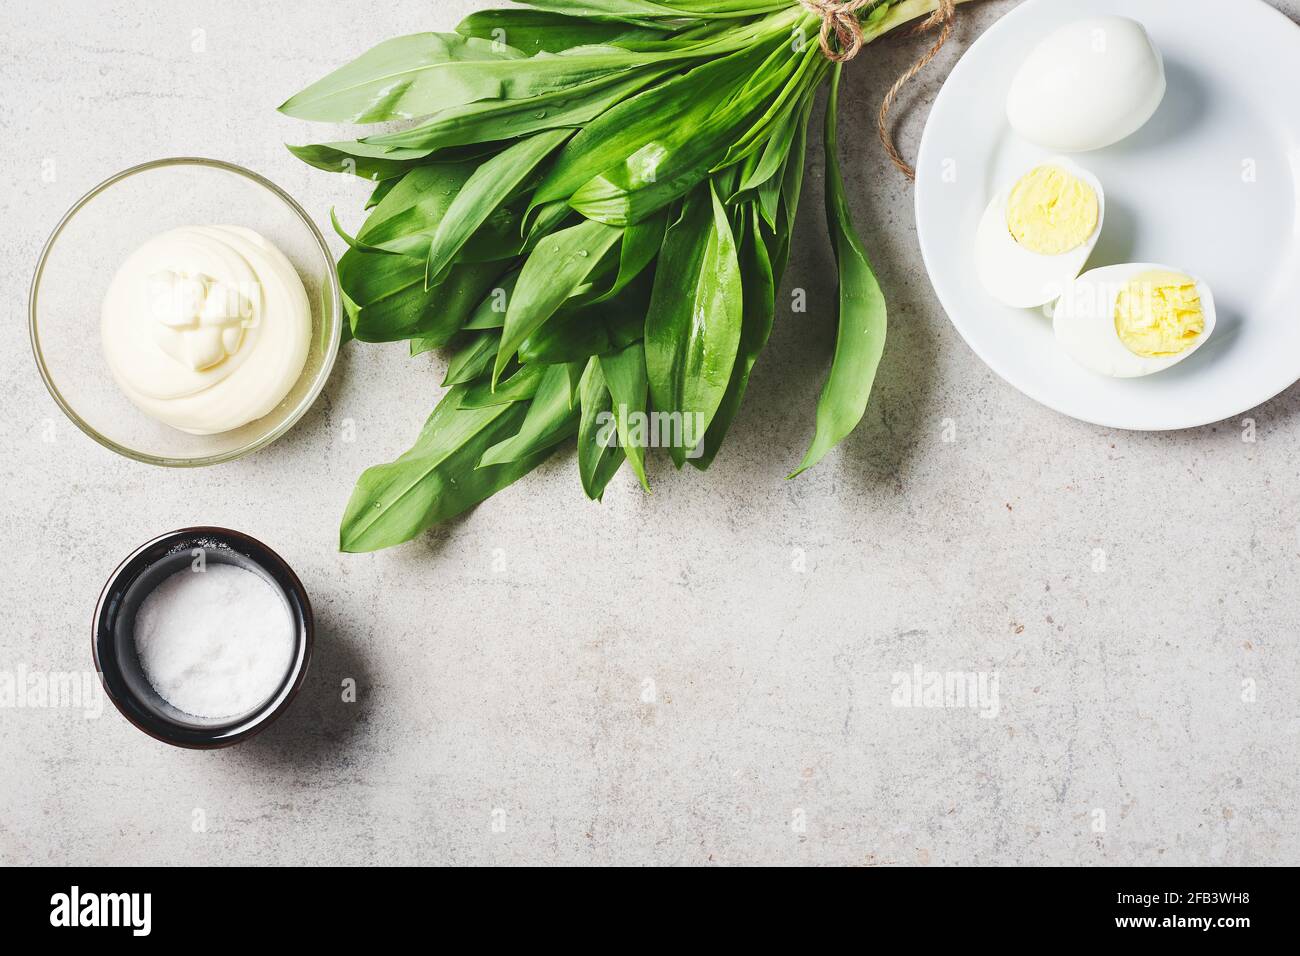 Mazzo di ramson fresco (aglio selvatico), salsa maionese, uova. Ingredienti per un'insalata o un antipasto. Foto Stock